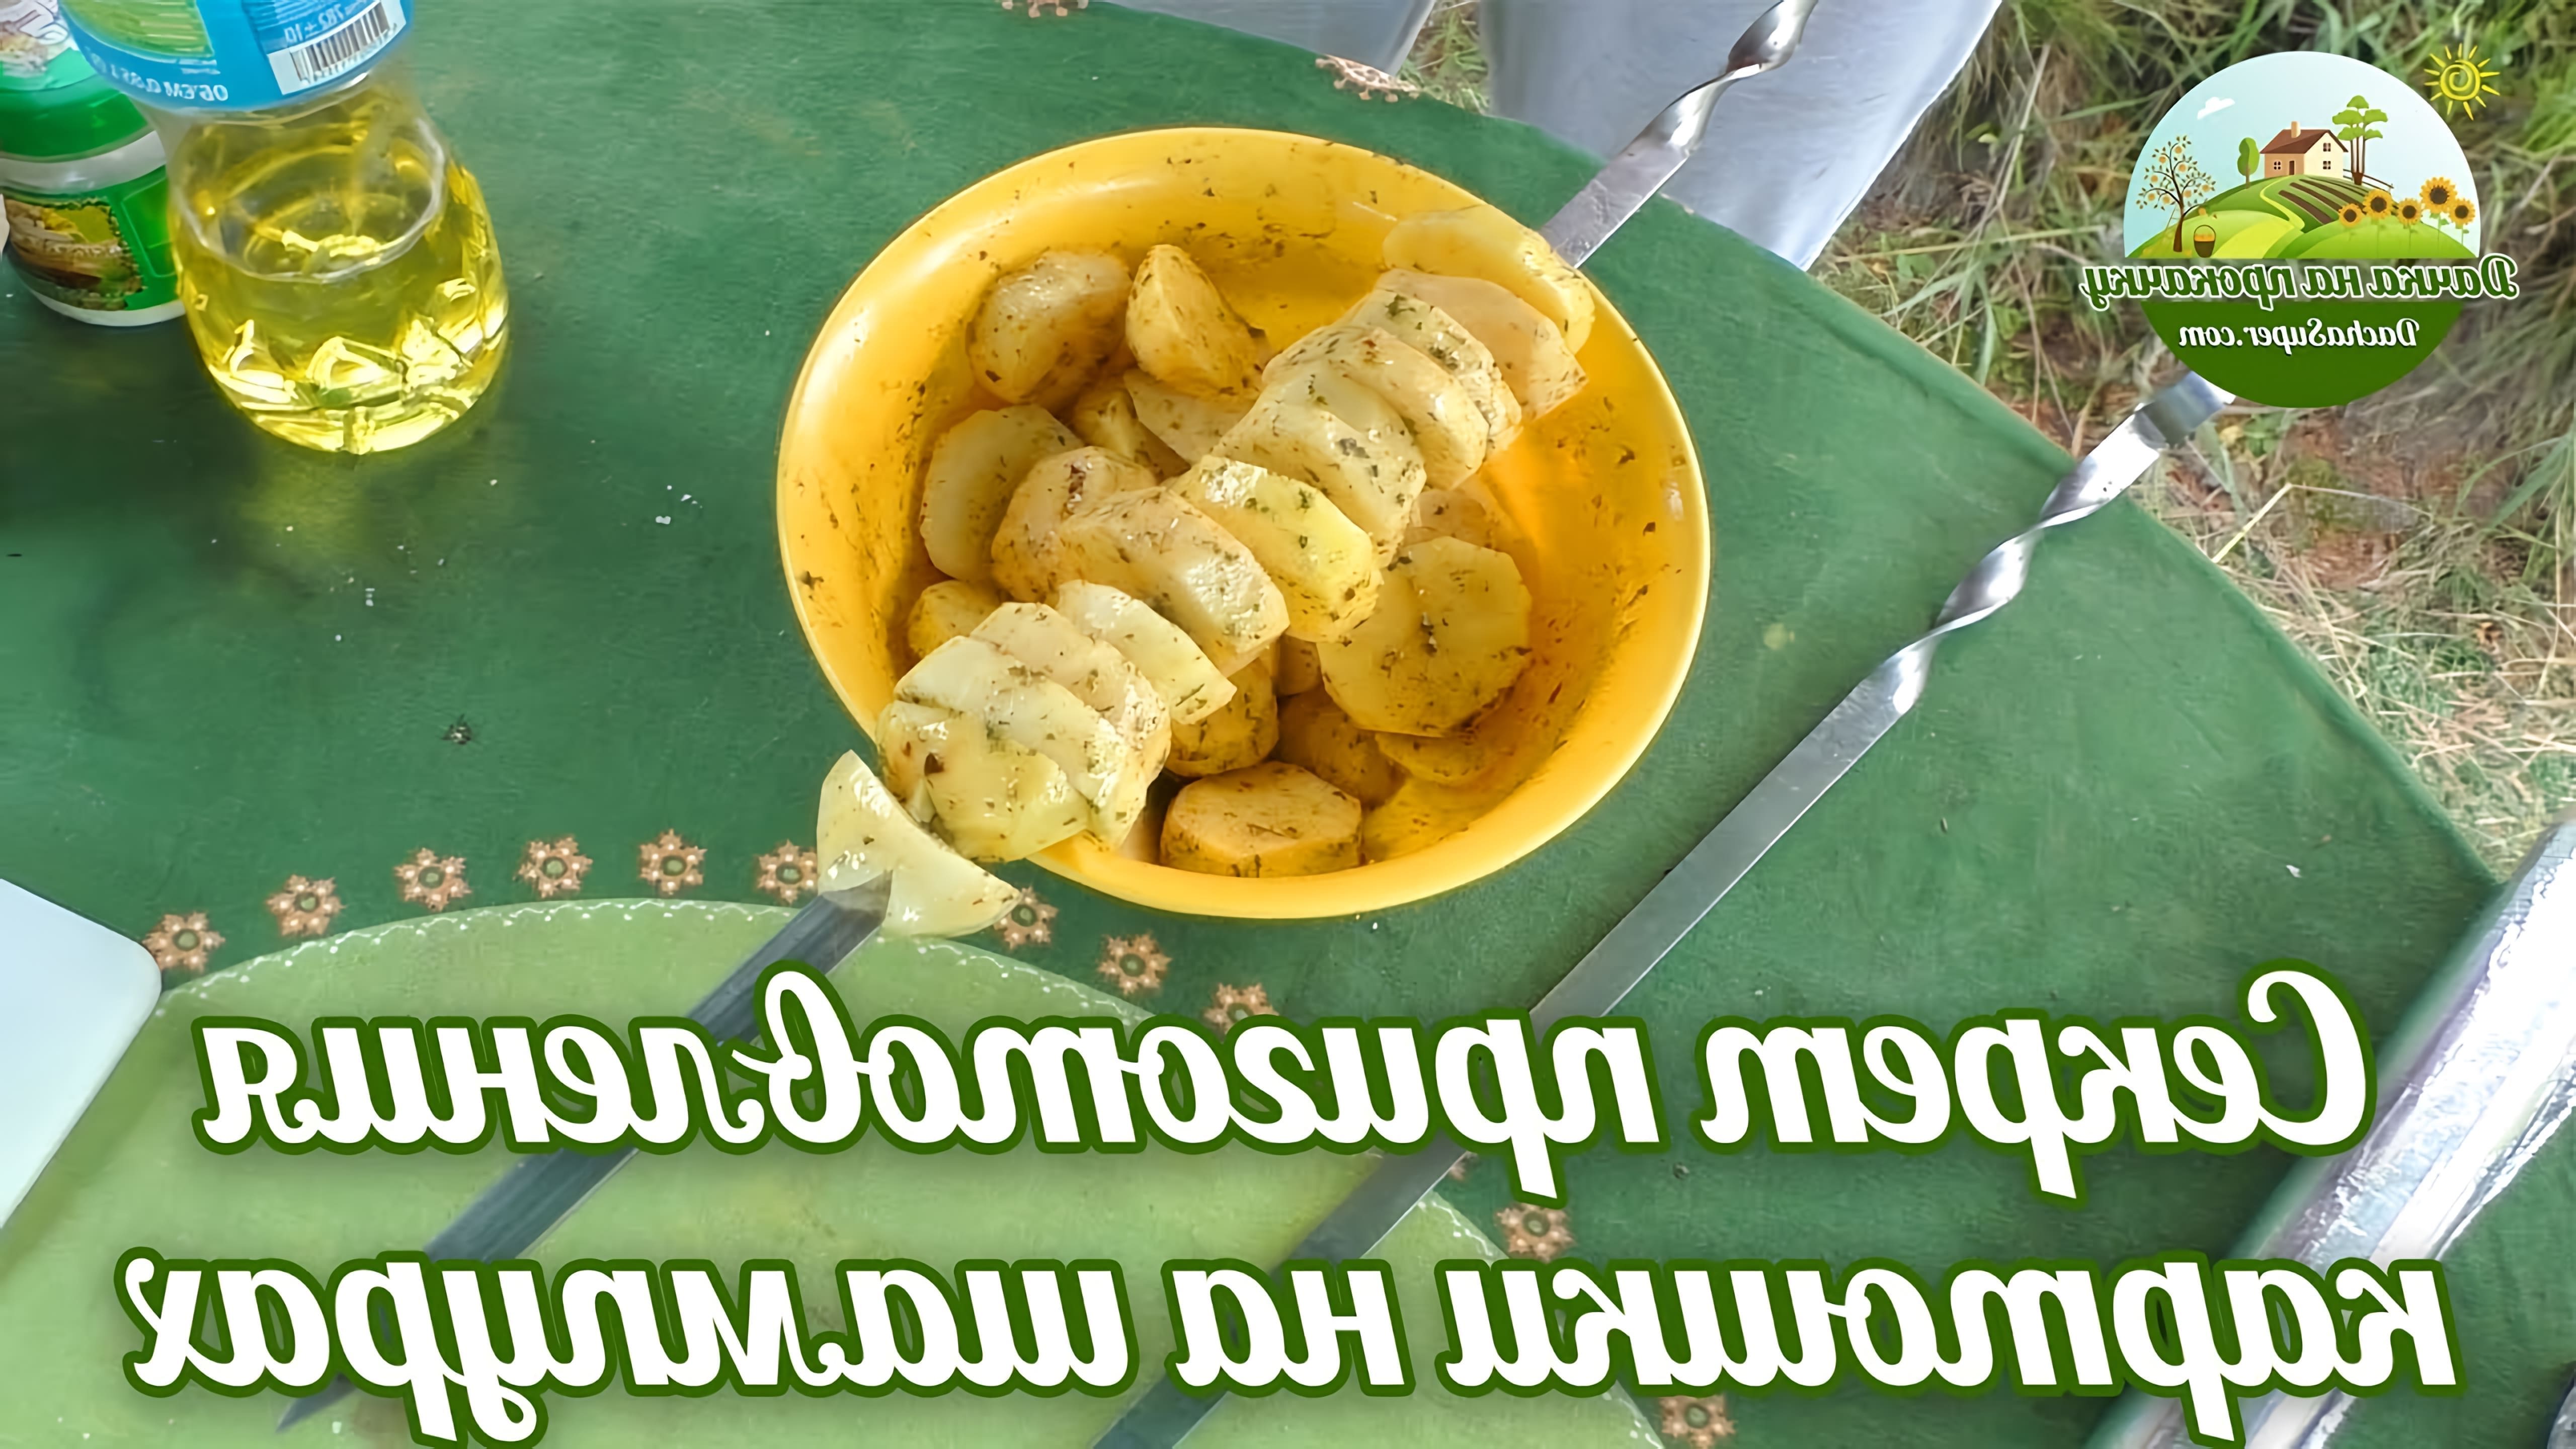 В этом видео-ролике вы увидите, как приготовить картошку на шампурах